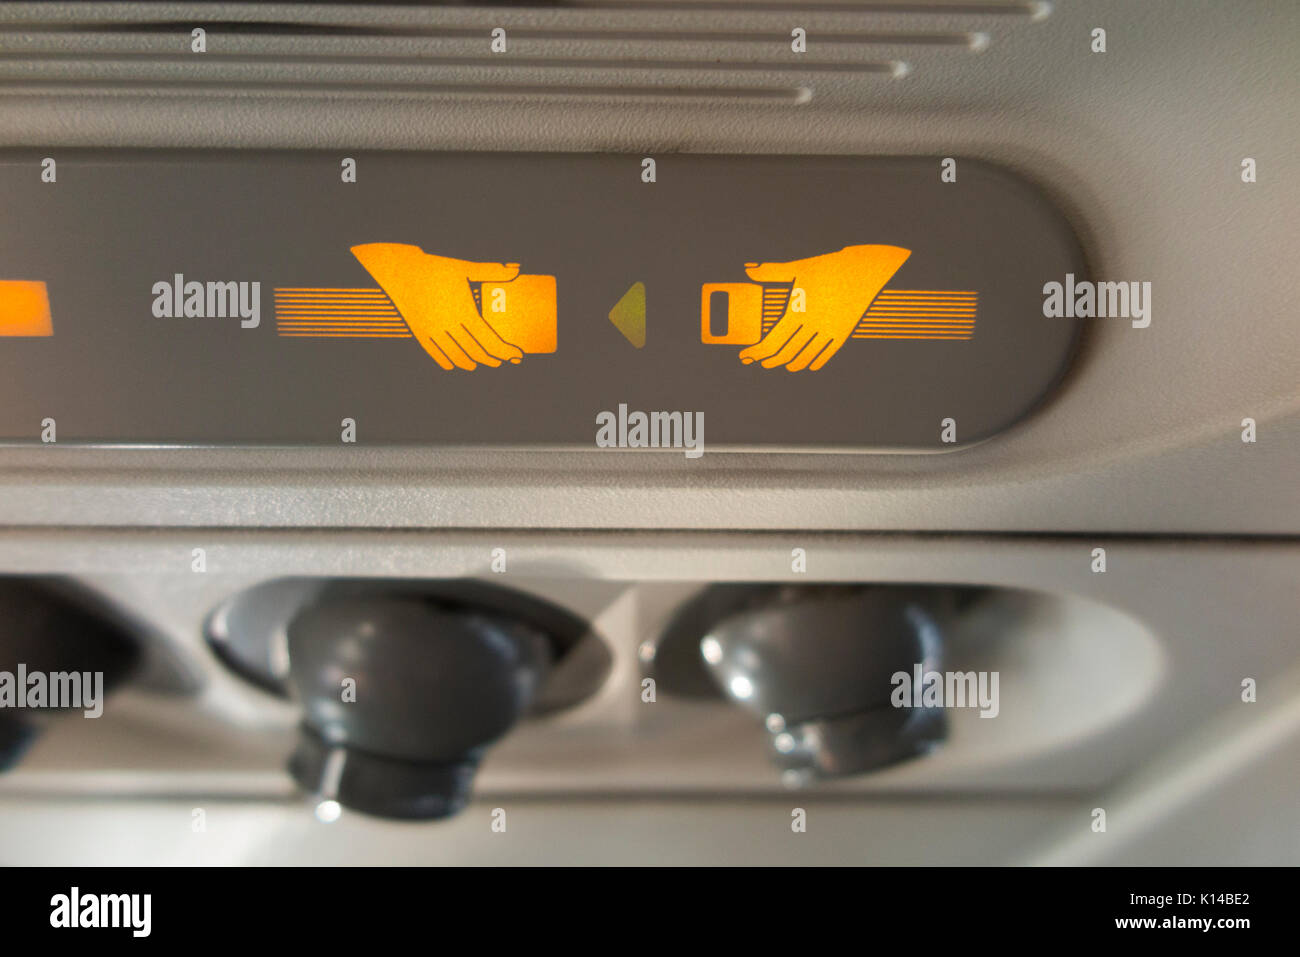 Attacher la ceinture de sécurité passager sign & cool des buses d'air / baie de buse d'aération / Ventilation / console. Airbus A320 / avion / avion / avion. Banque D'Images